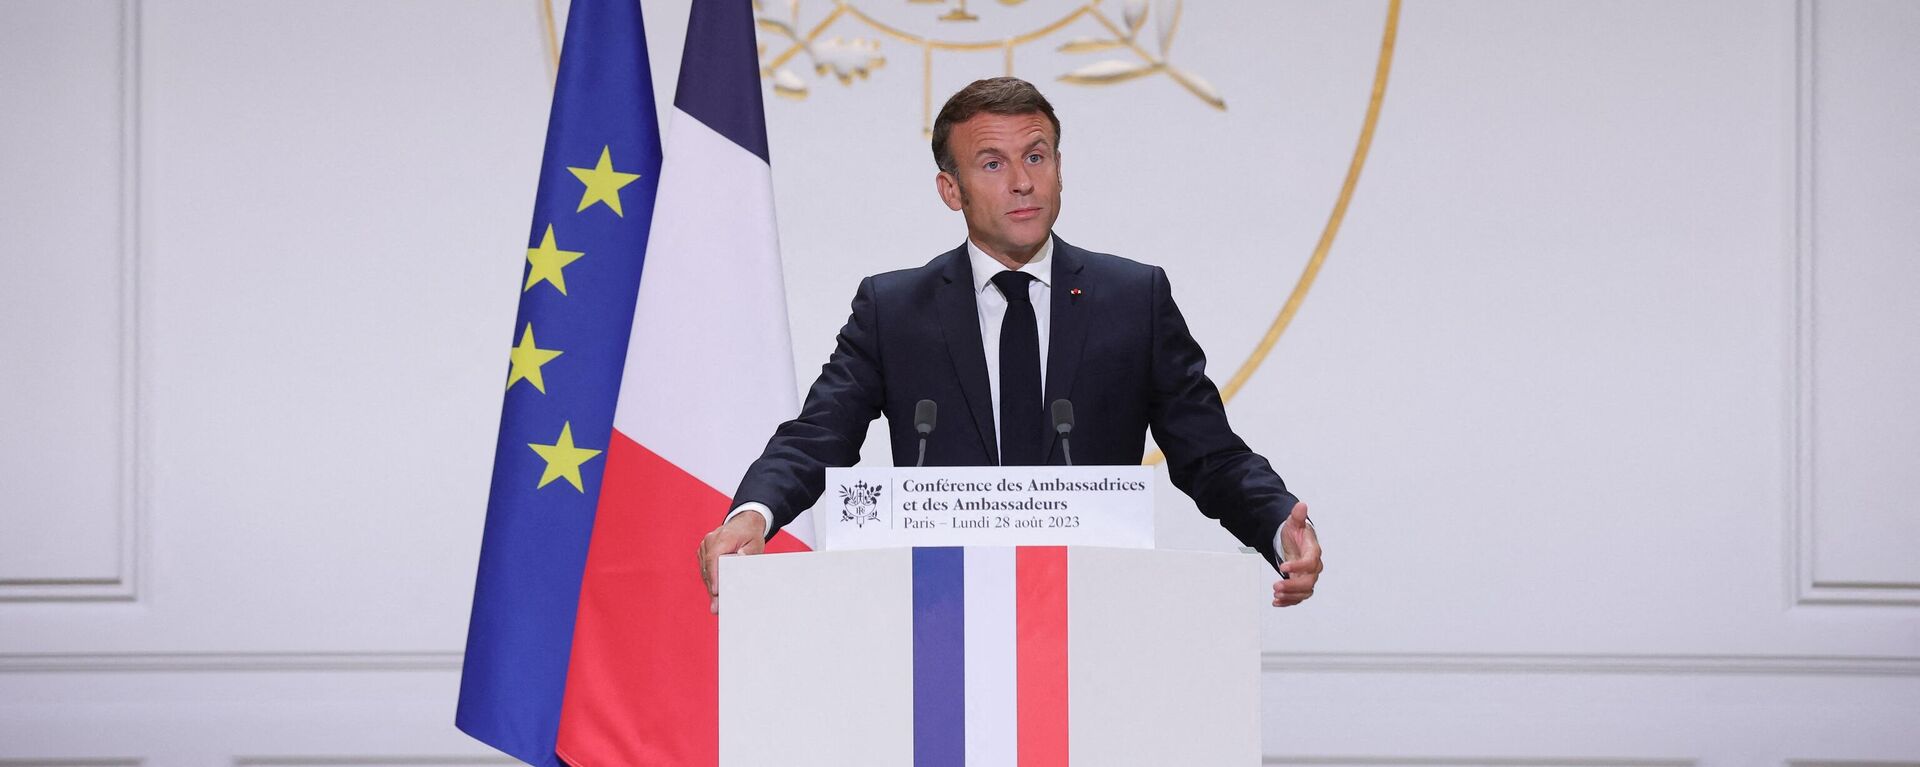 Emmanuel Macron, presidente da França, fala aos embaixadores franceses durante a conferência de embaixadores no Palácio do Élysée, em Paris, França, 28 de agosto de 2023 - Sputnik Brasil, 1920, 28.08.2023